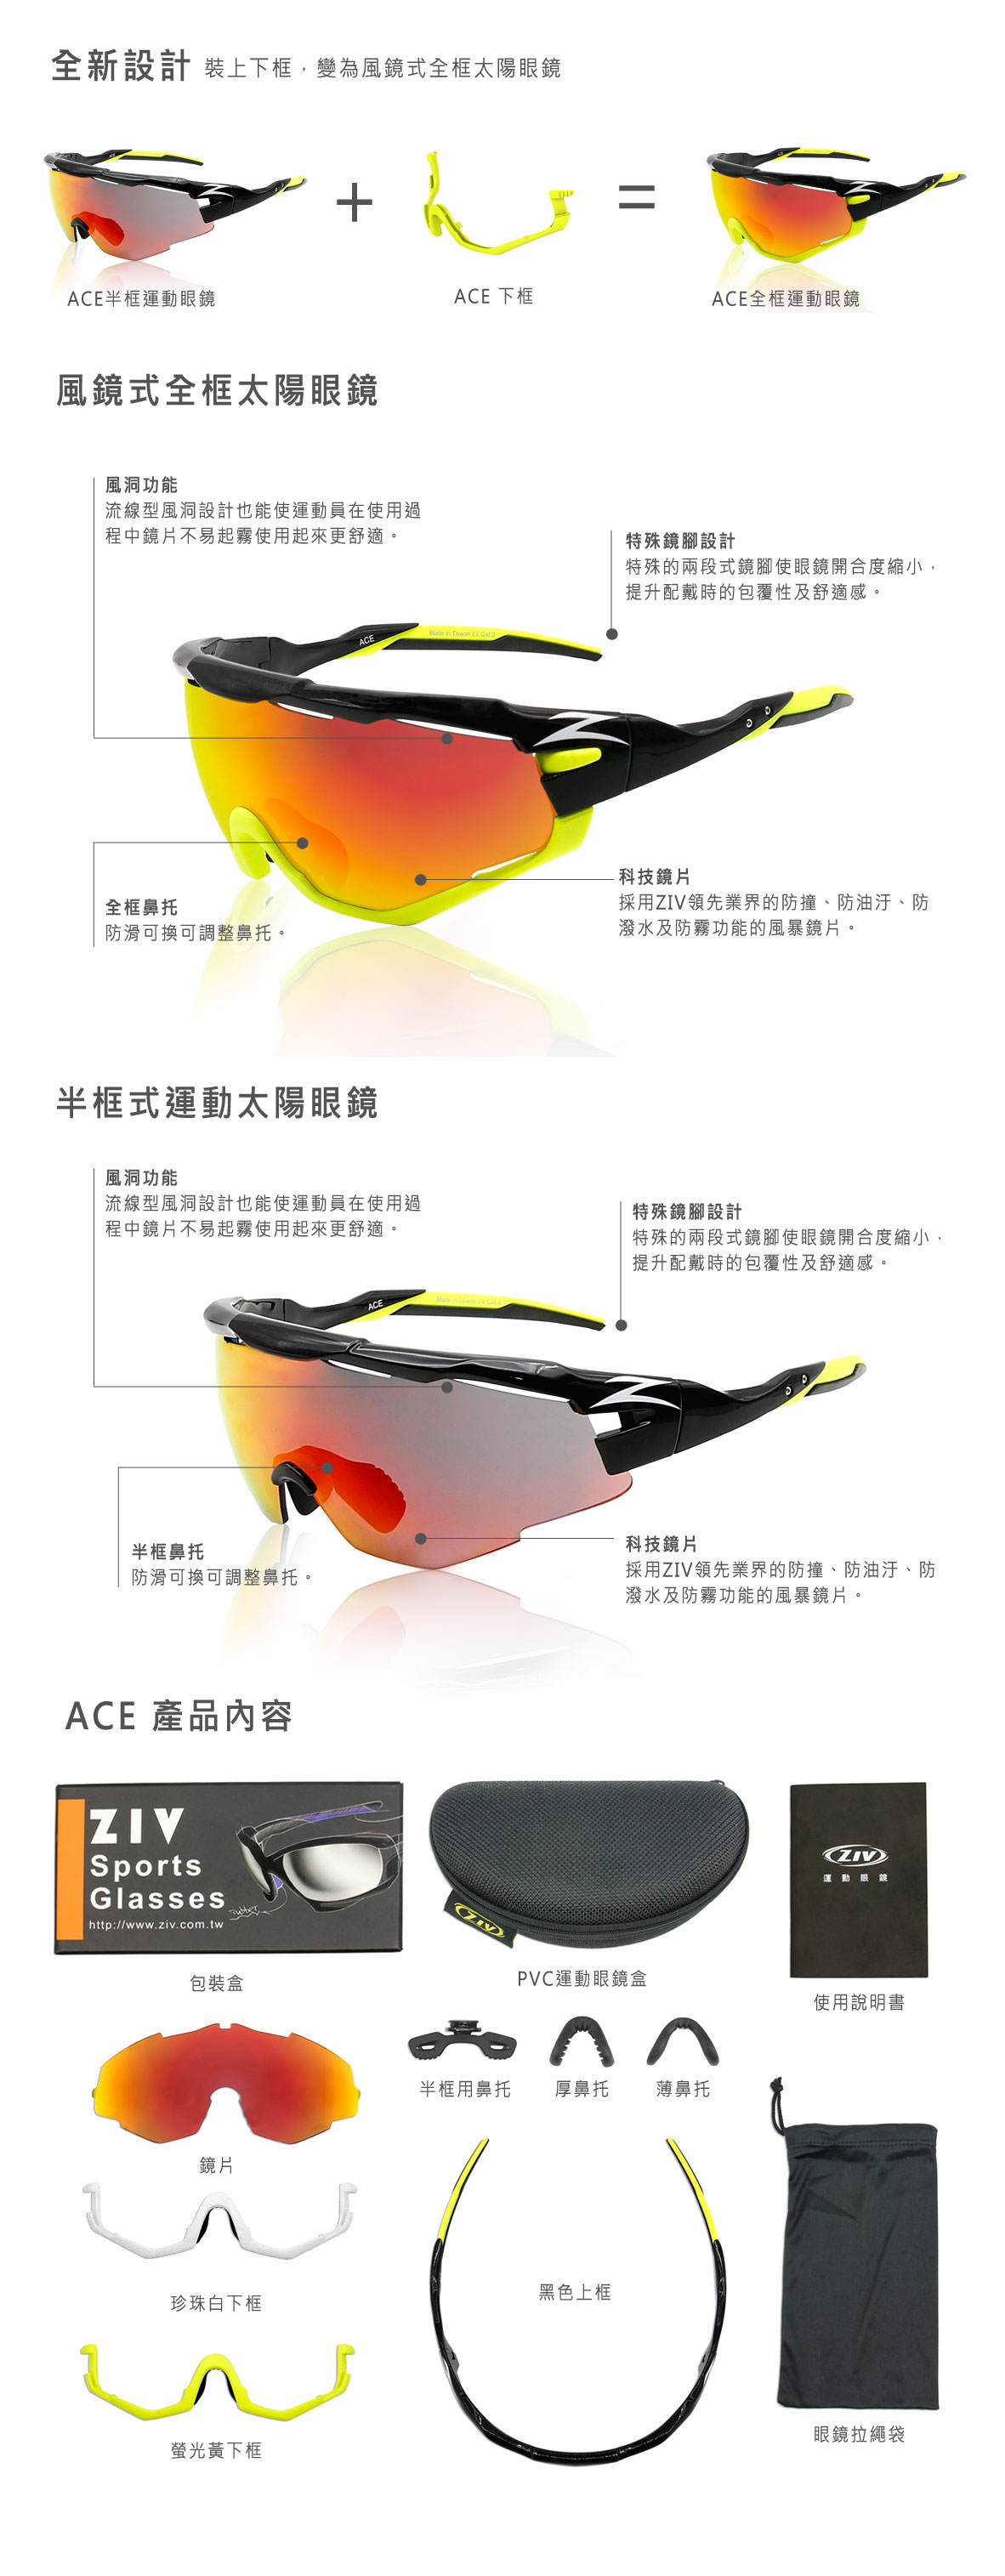 ZIV運動眼鏡 ACE風鏡系列